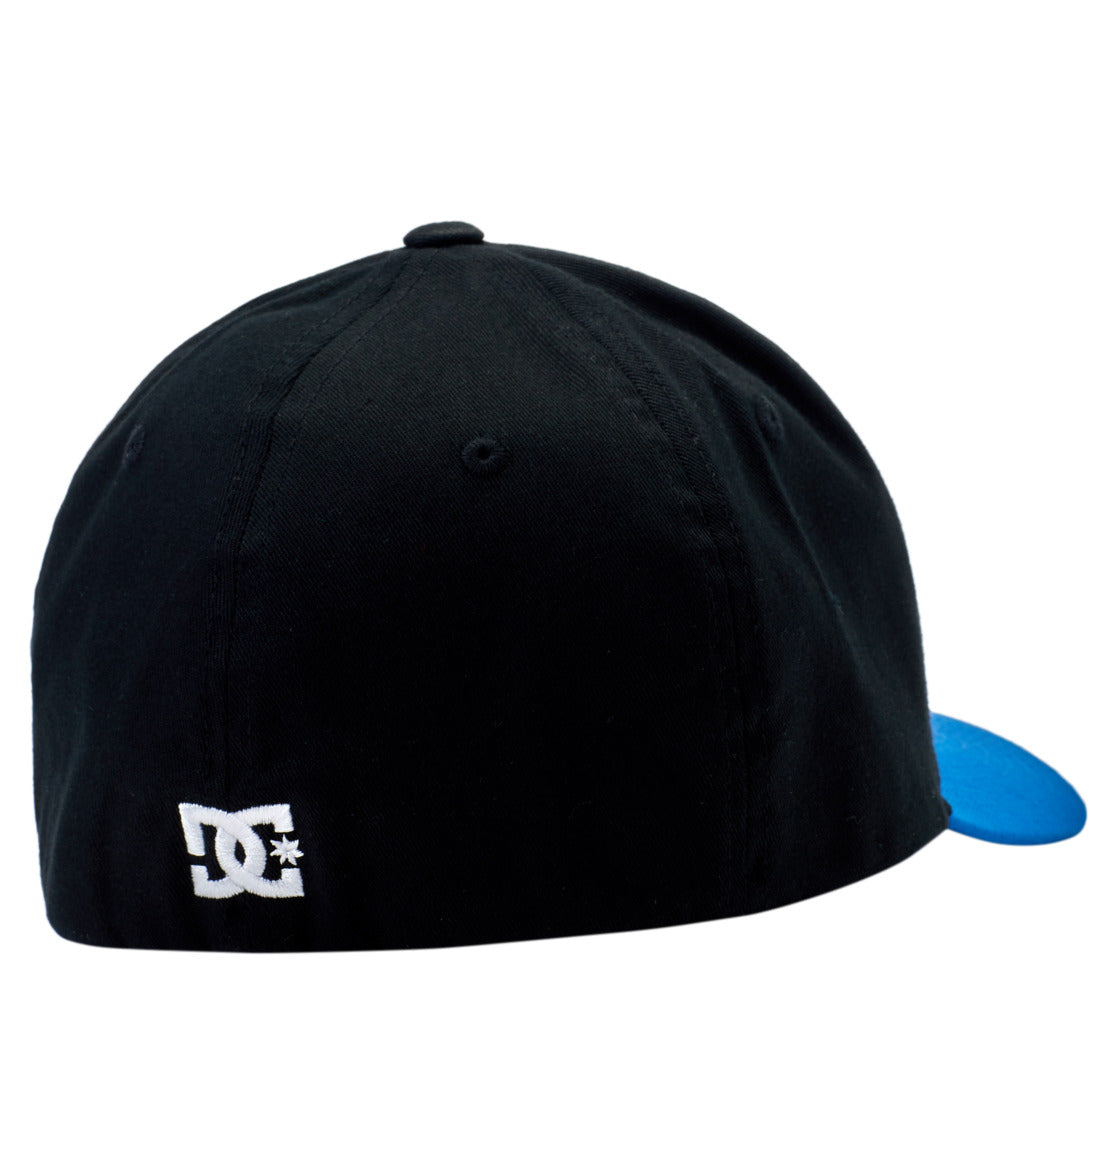 DC SHOES CAP STAR NAUTICAL BLUE & BLACK FLEXFIT CAP